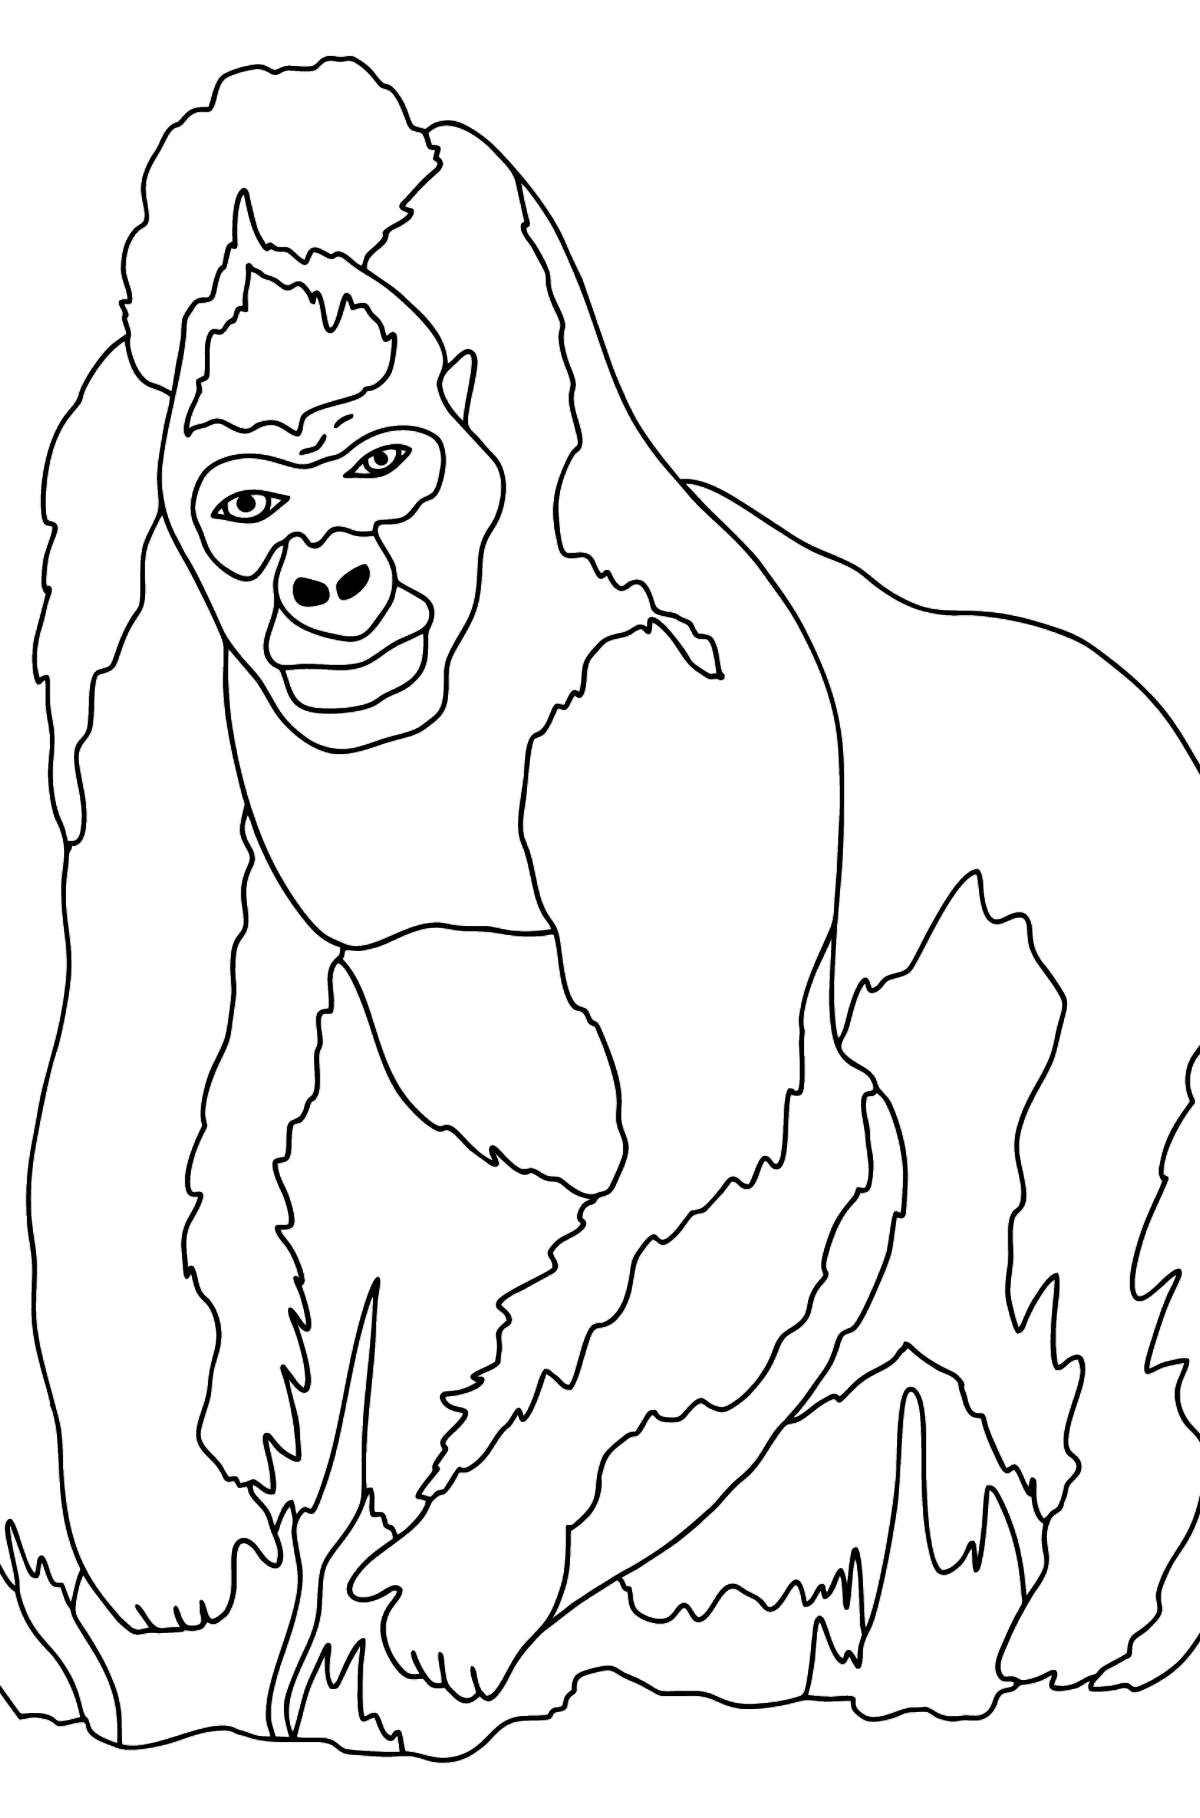 Bellissimo Disegno da colorare - Gorilla - Disegni da colorare per bambini